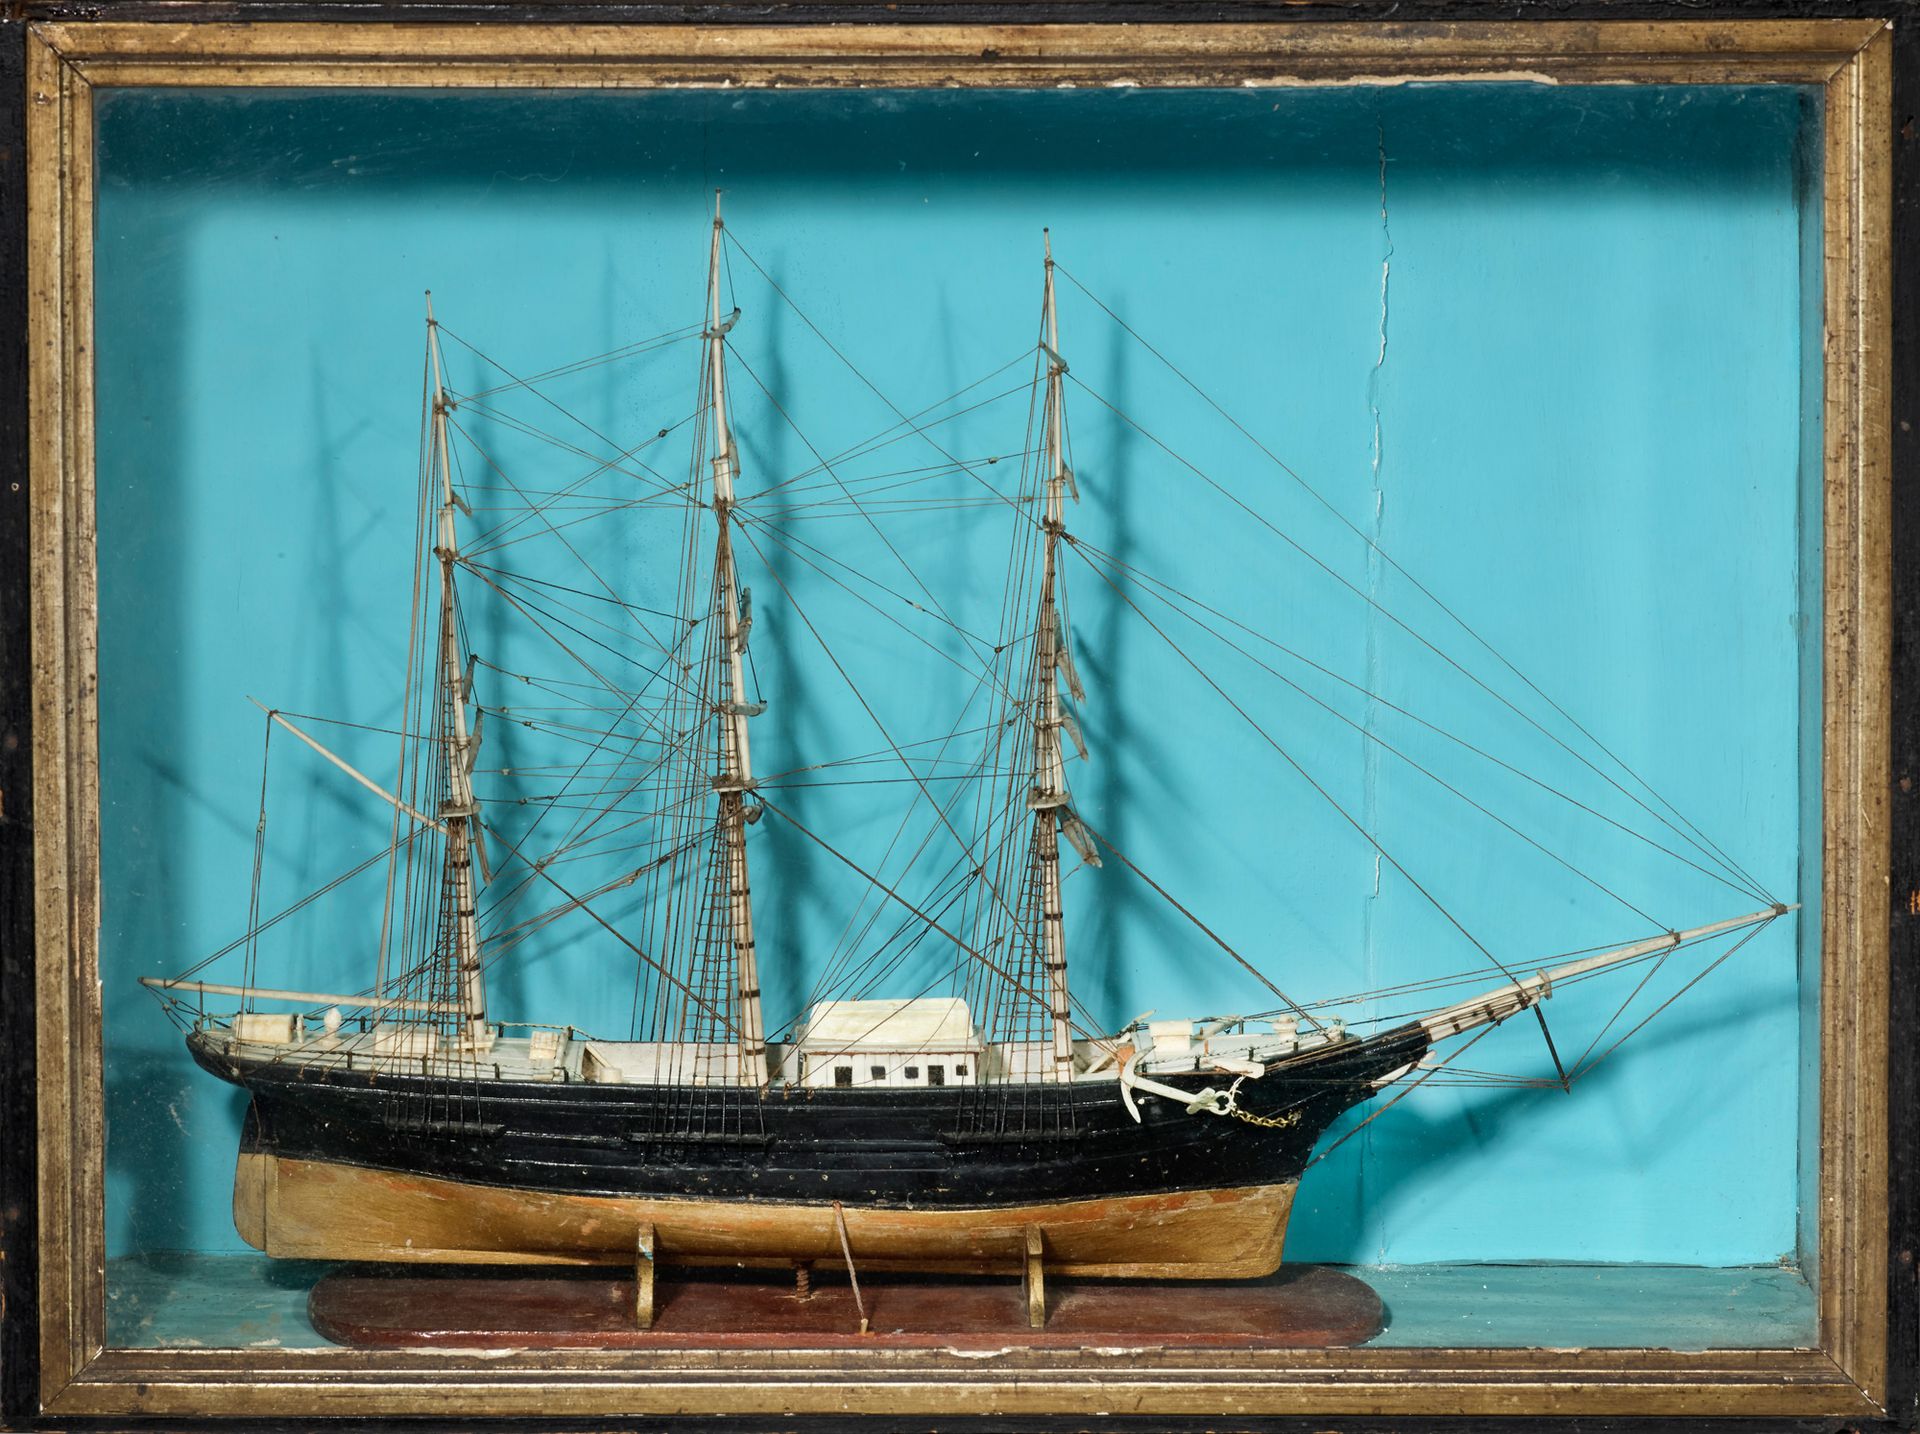 Null * 骨质、象牙和木质船身的帆船模型
45 x 50 cm